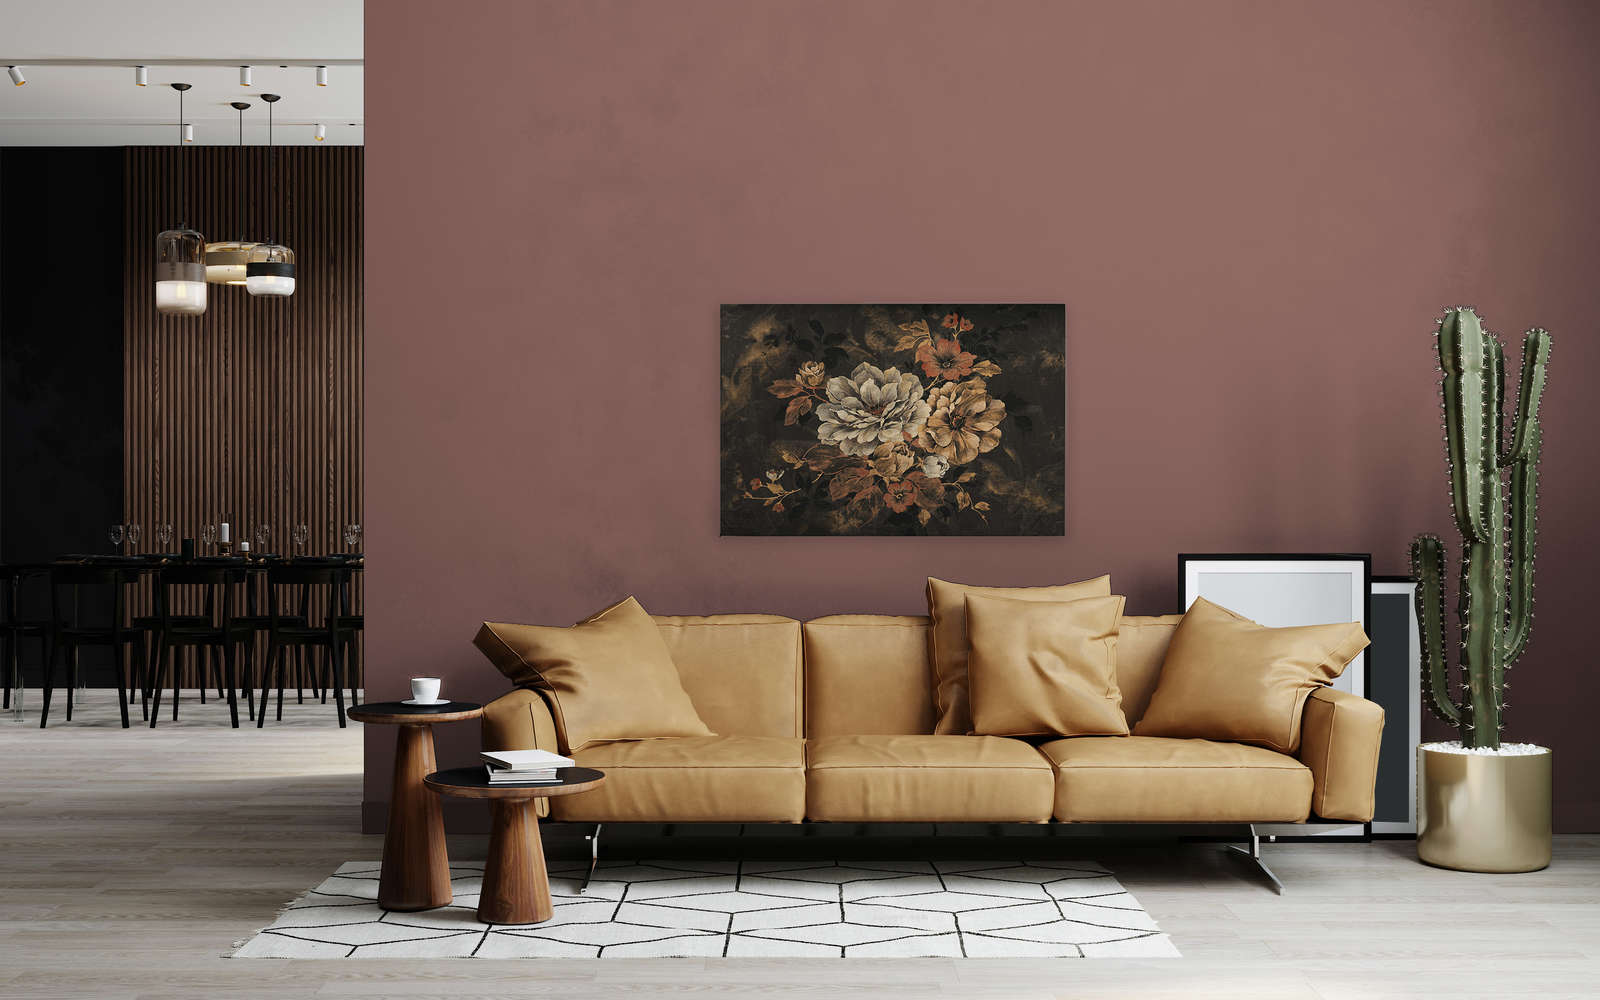             Canvas schilderij bloem ontwerp, olieverfschilderij in vintage look - 1.20 m x 0.80 m
        